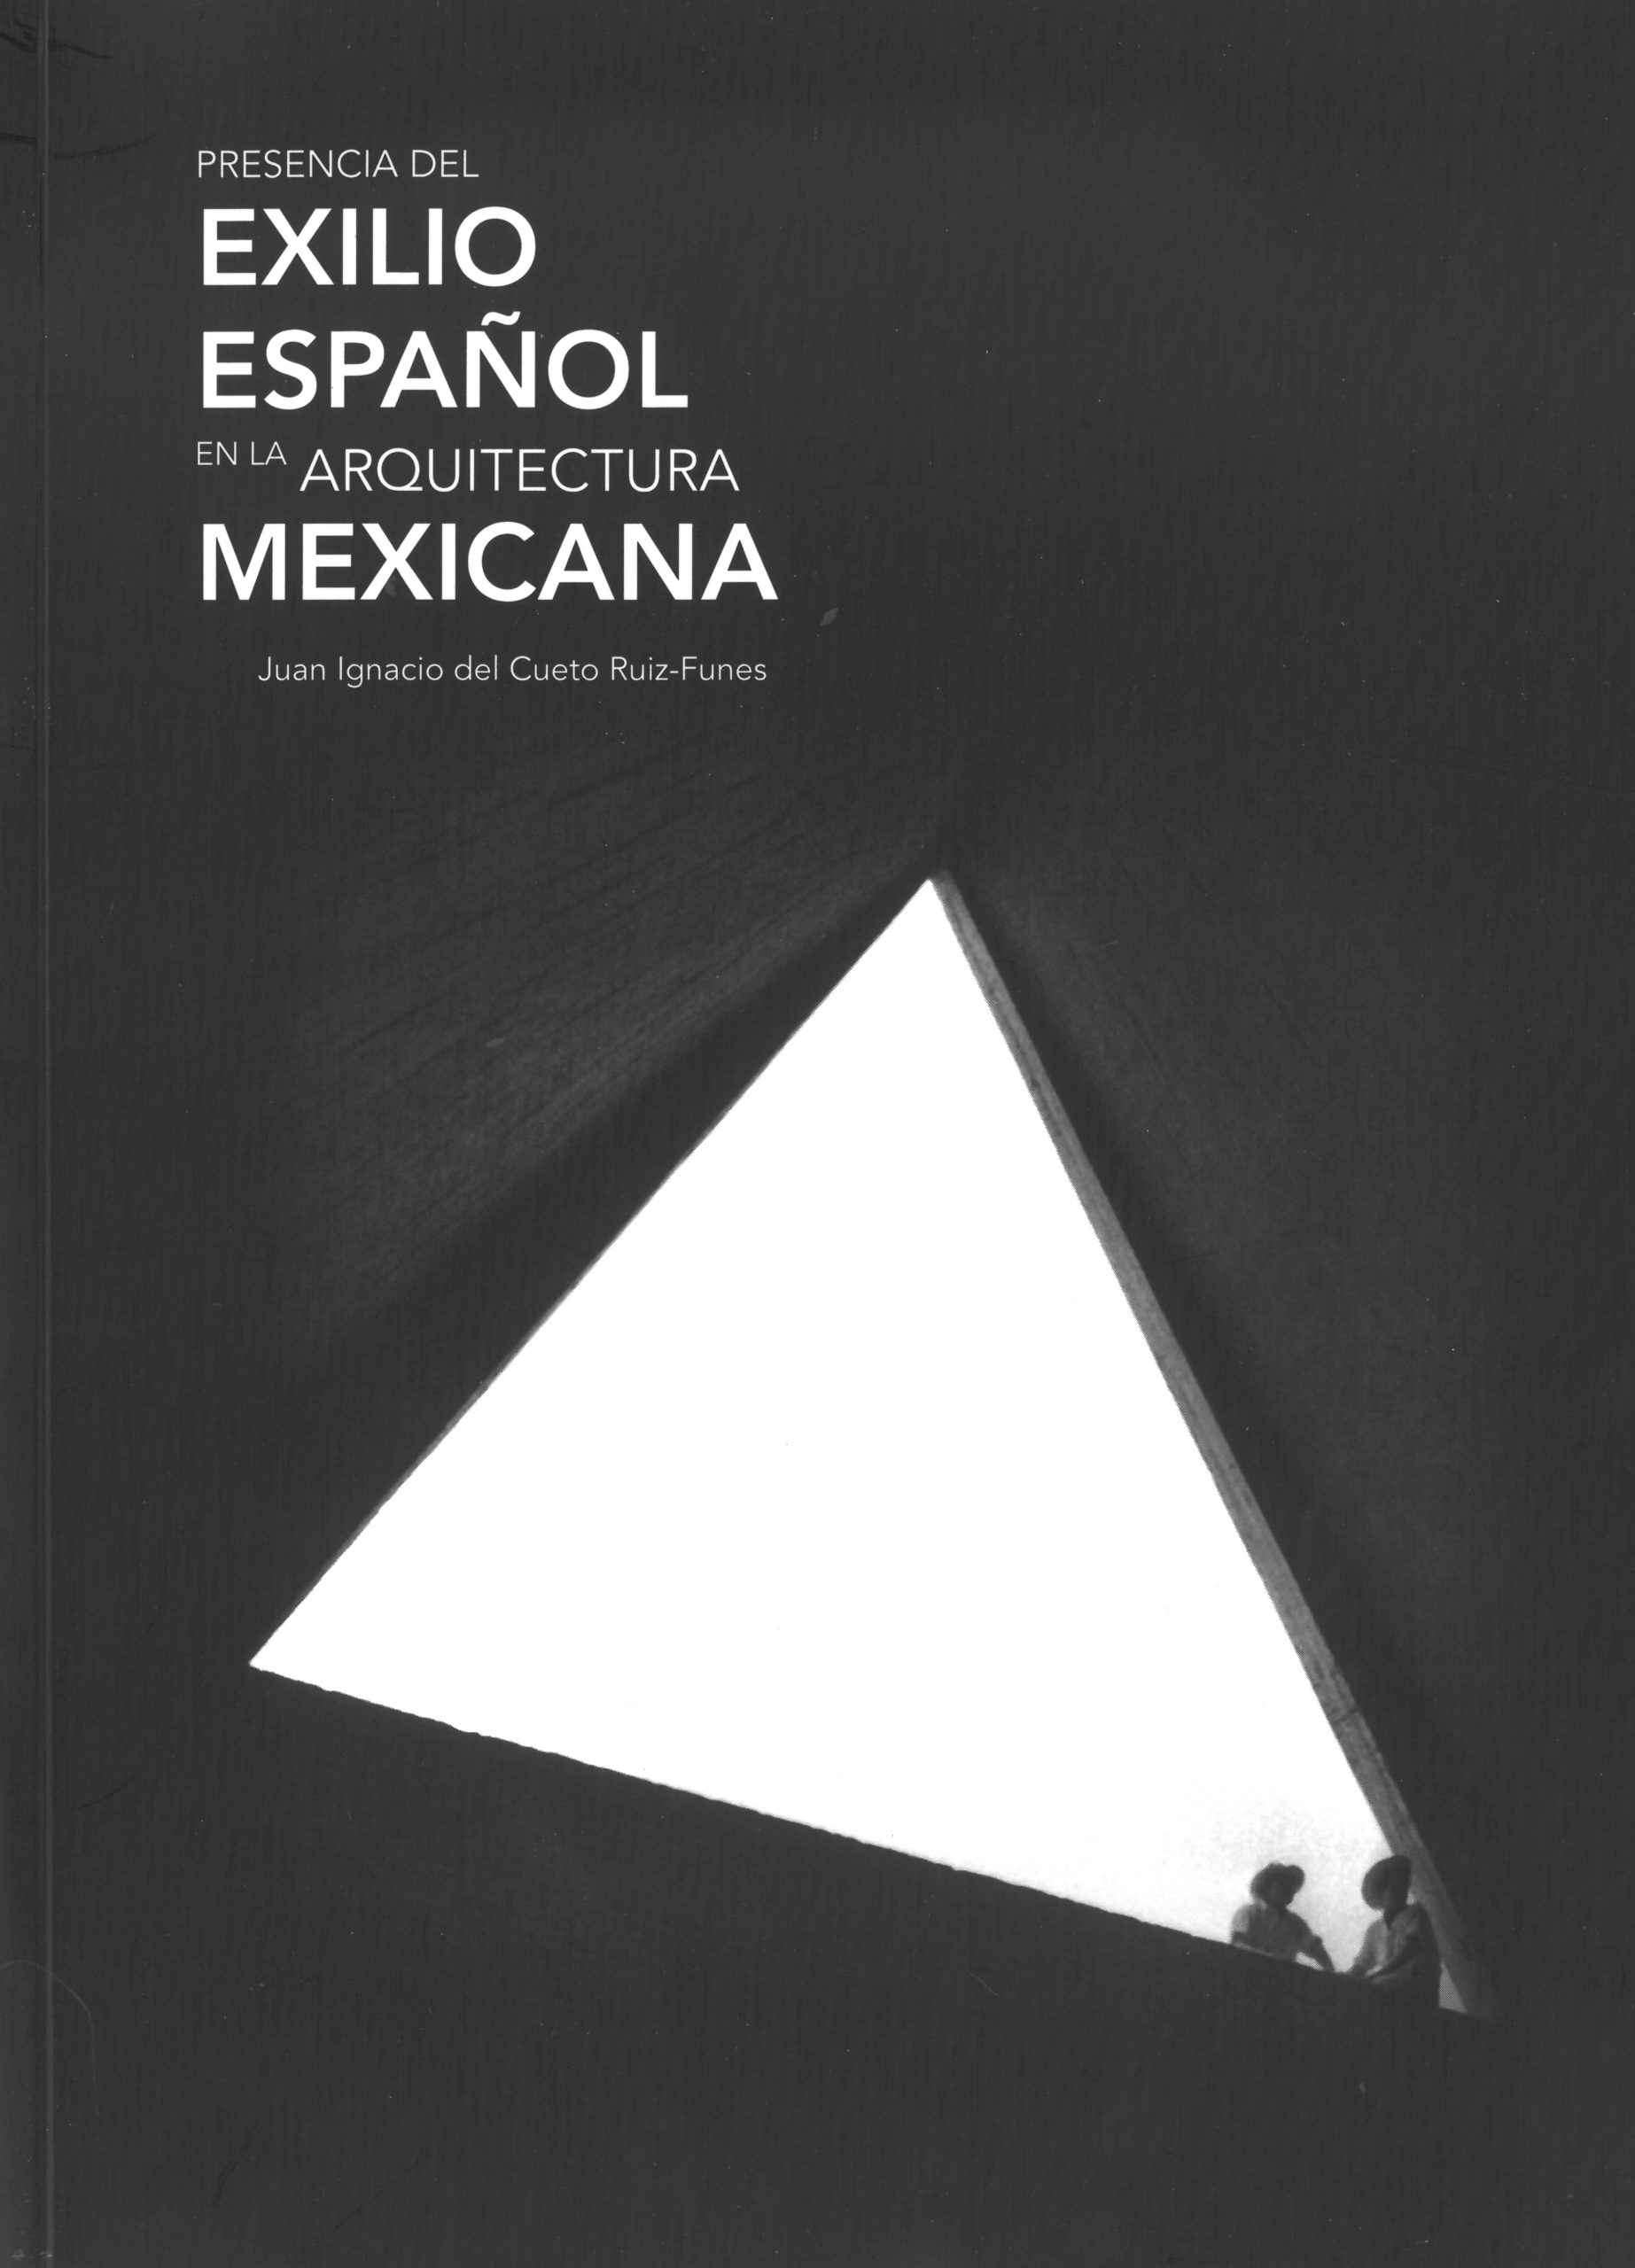 Presencia del exilio español en la arquitectura mexicana-image